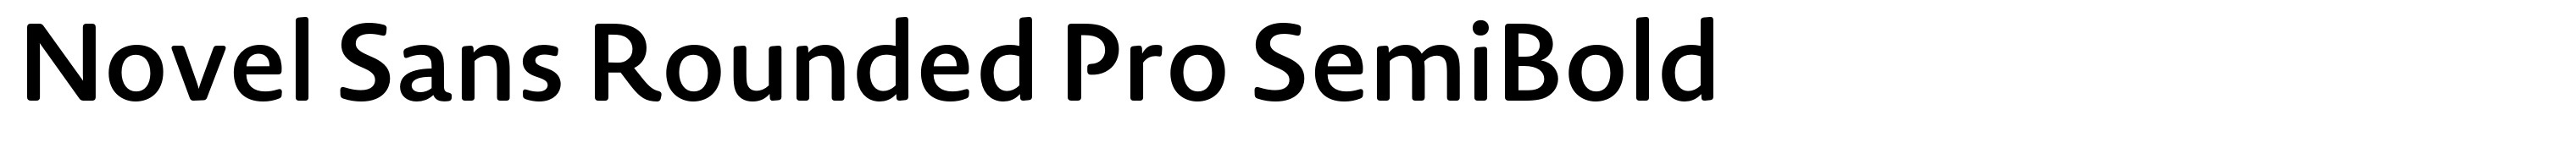 Novel Sans Rounded Pro SemiBold